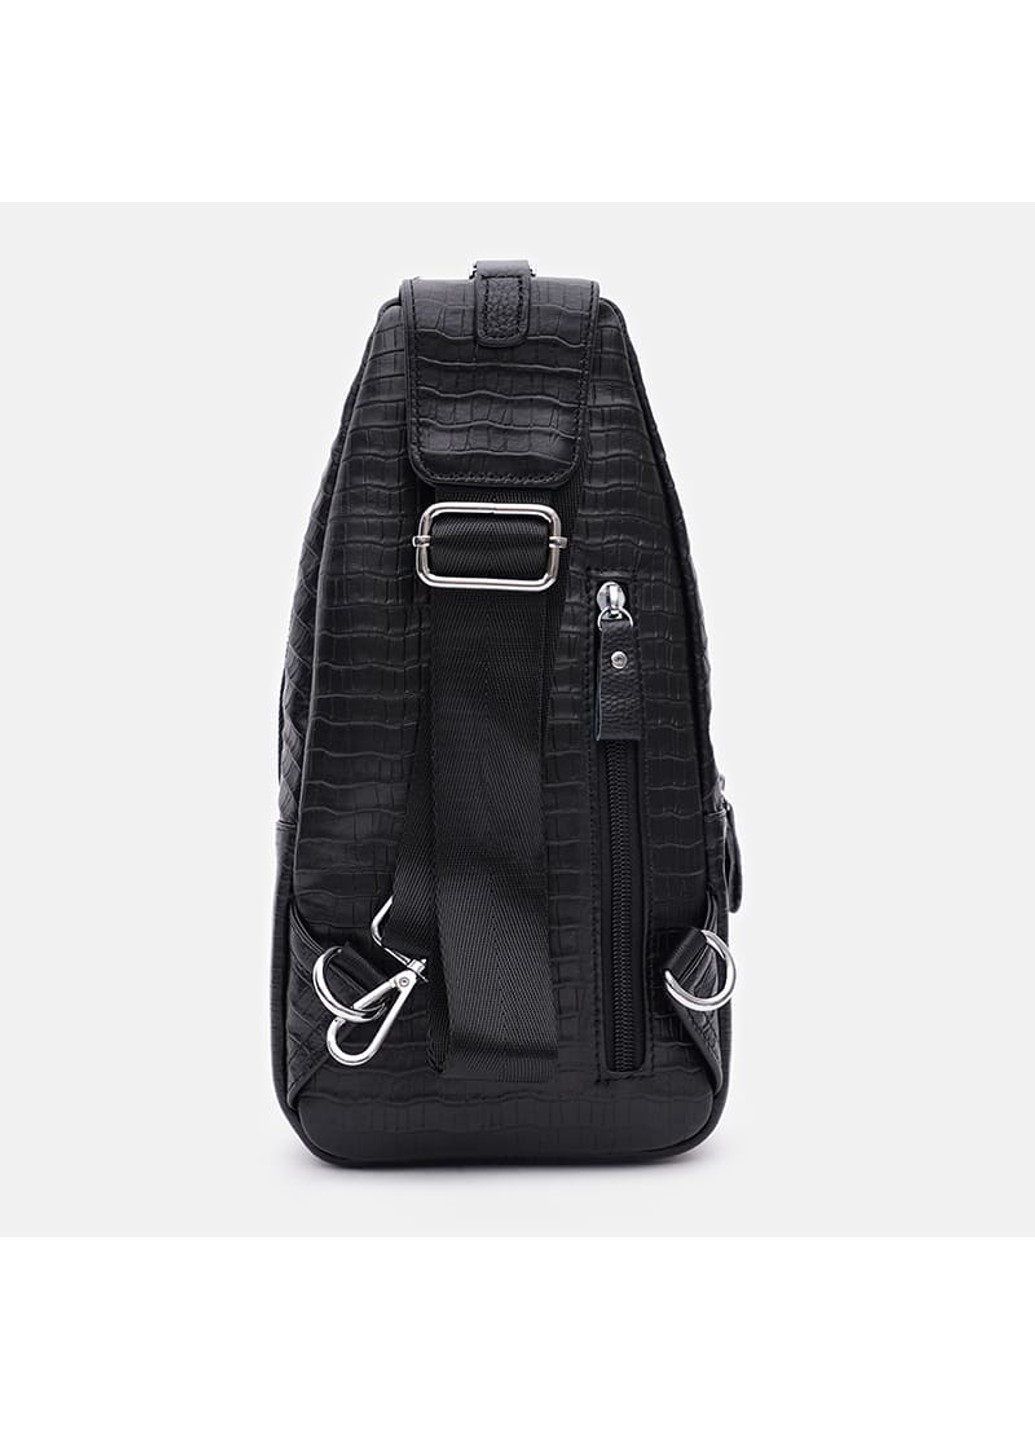 Мужской кожаный рюкзак K15015bl-black Keizer (271665099)